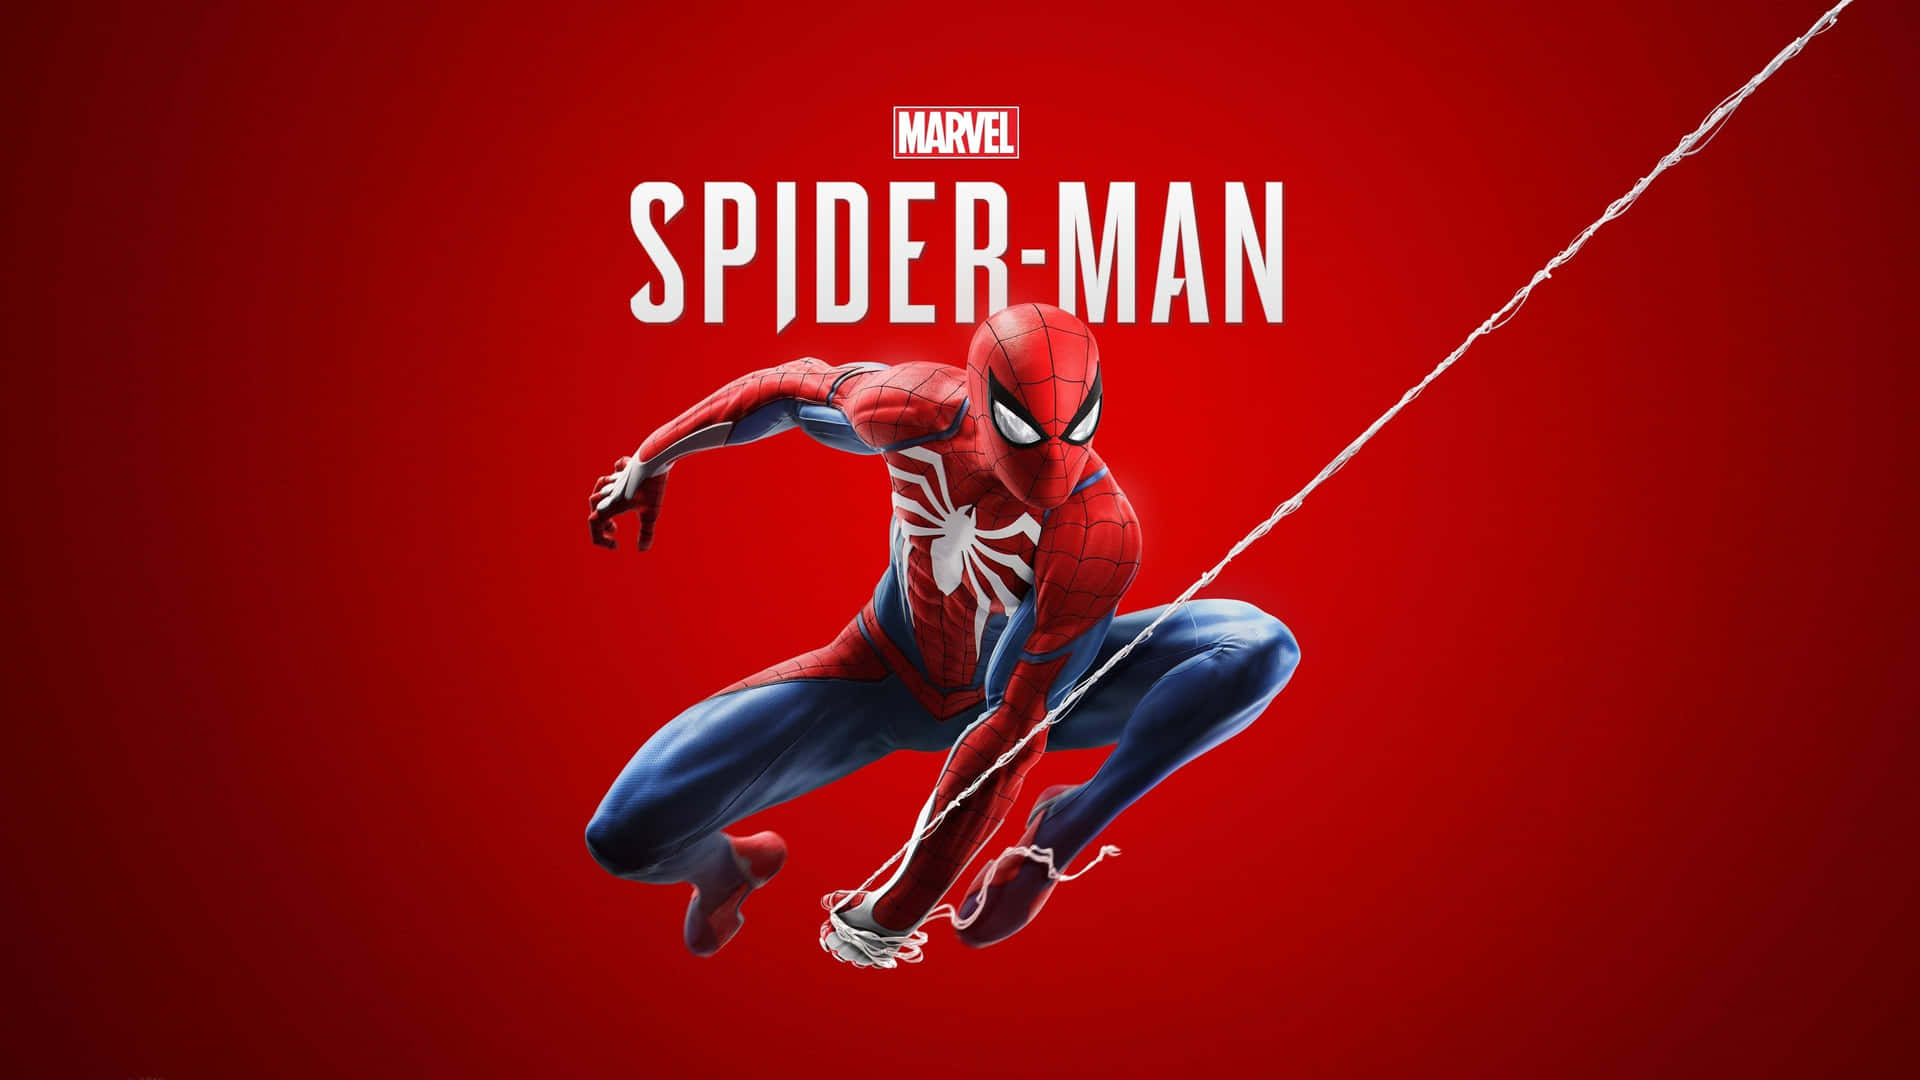 Spiderman Ps4 4k Superhéroe De Marvel Fondo Rojo Fondo de pantalla